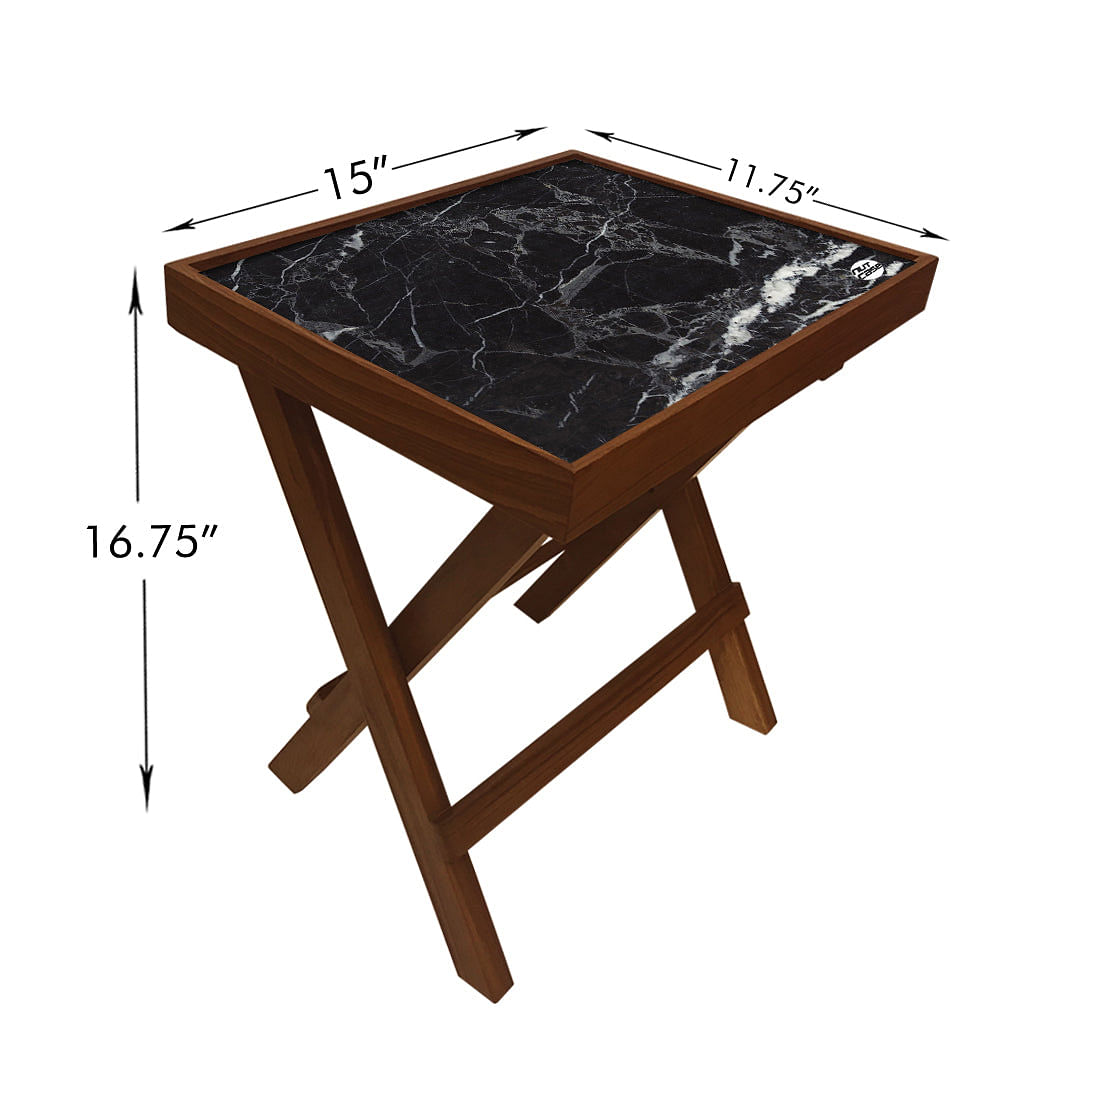 Folding Side Table - Teak Wood -Black Marble Nutcase